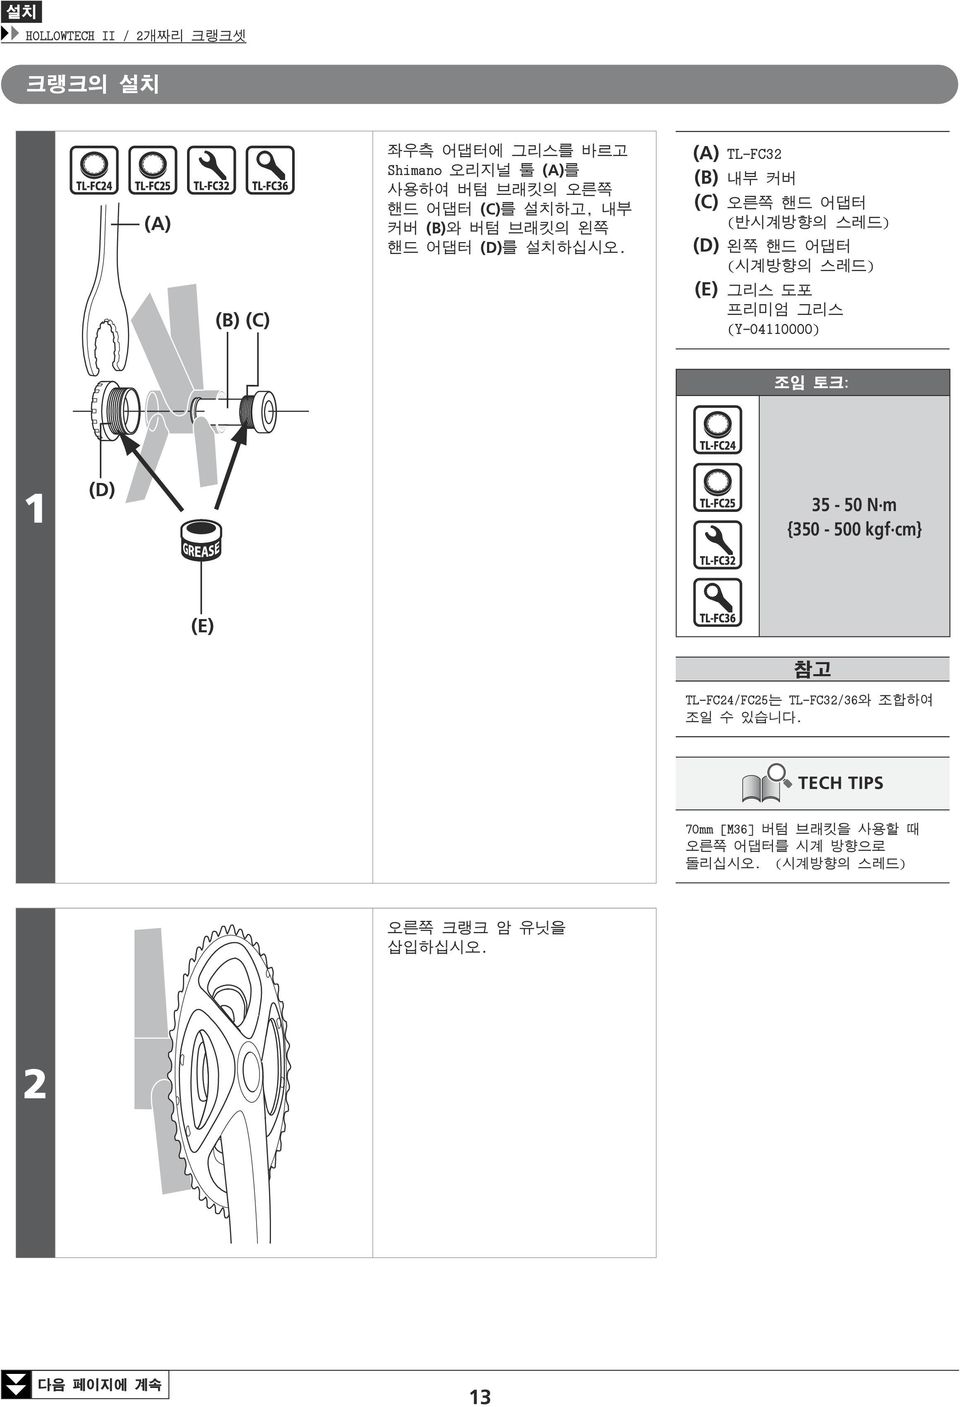 TL-FC32 (B) 내부 커버 (C) 오른쪽 핸드 어댑터 (반시계방향의 스레드) (D) 왼쪽 핸드 어댑터 (시계방향의 스레드) (E) 그리스 도포 프리미엄 그리스 (Y-04110000) 1 (D)